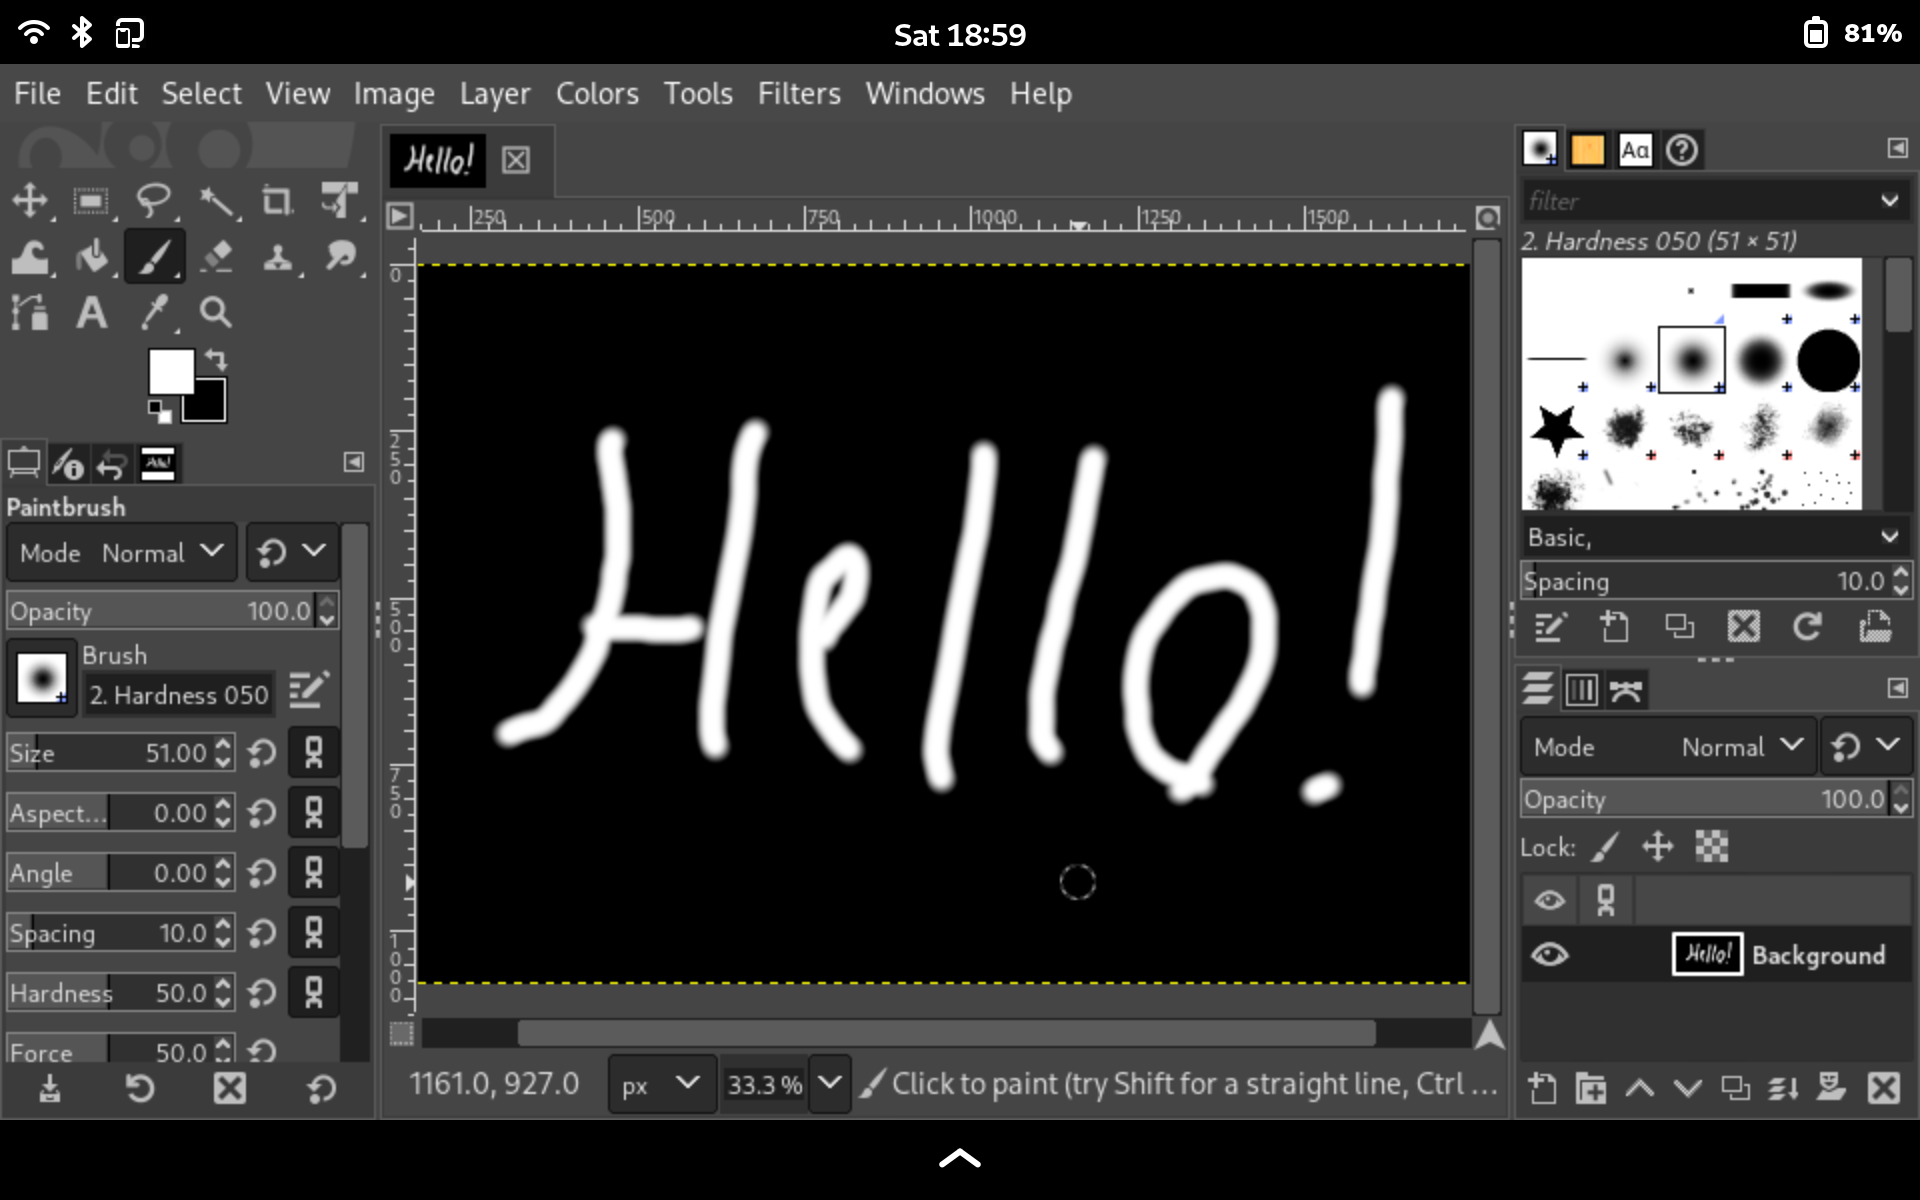 GIMP on a tablet